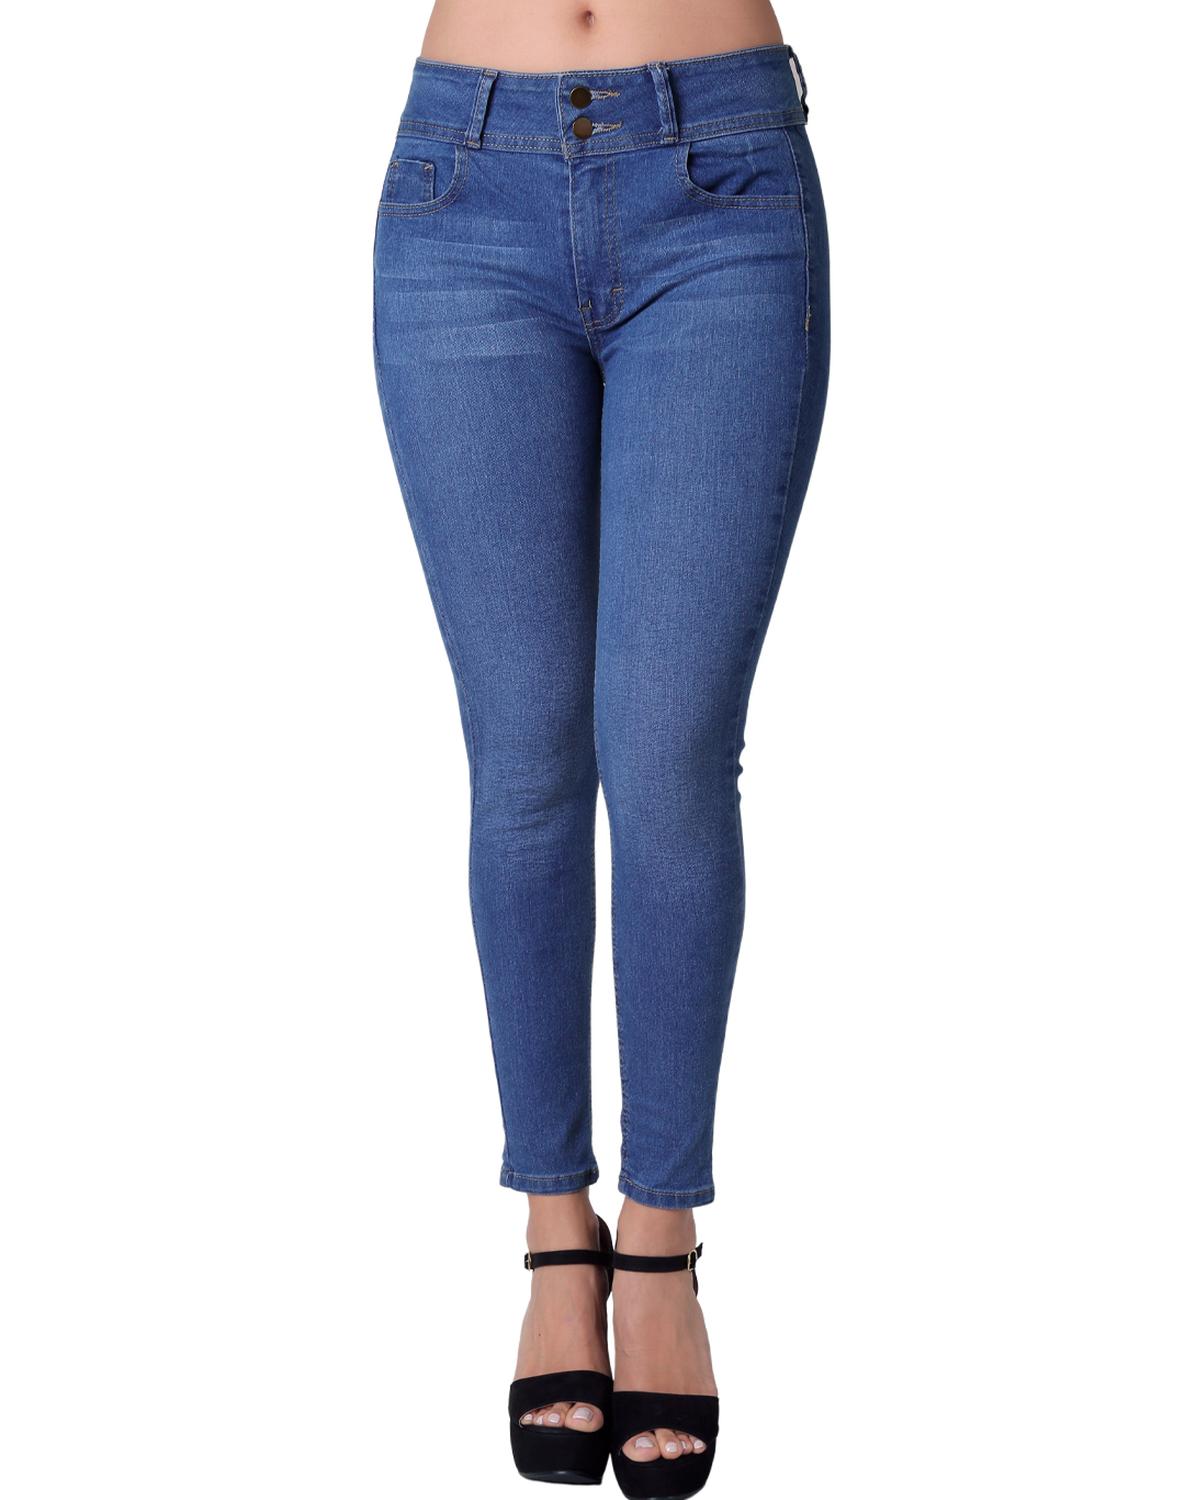 Jeans Moda Skinny Mujer Azul Stfashion 63104611